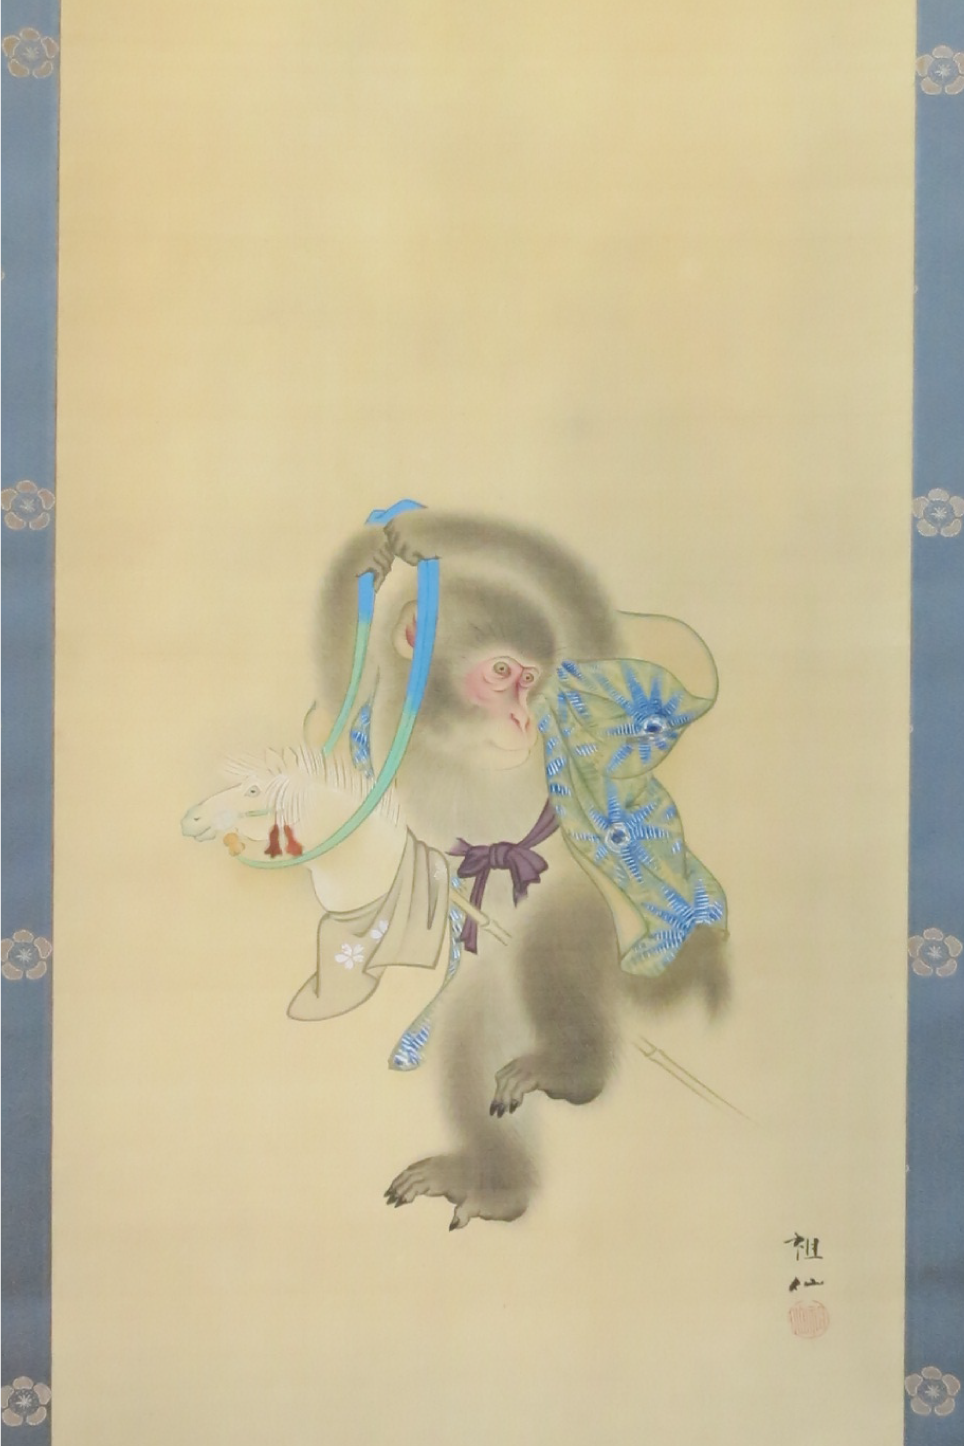 竹馬に猿－Monkey on bamboo horse－